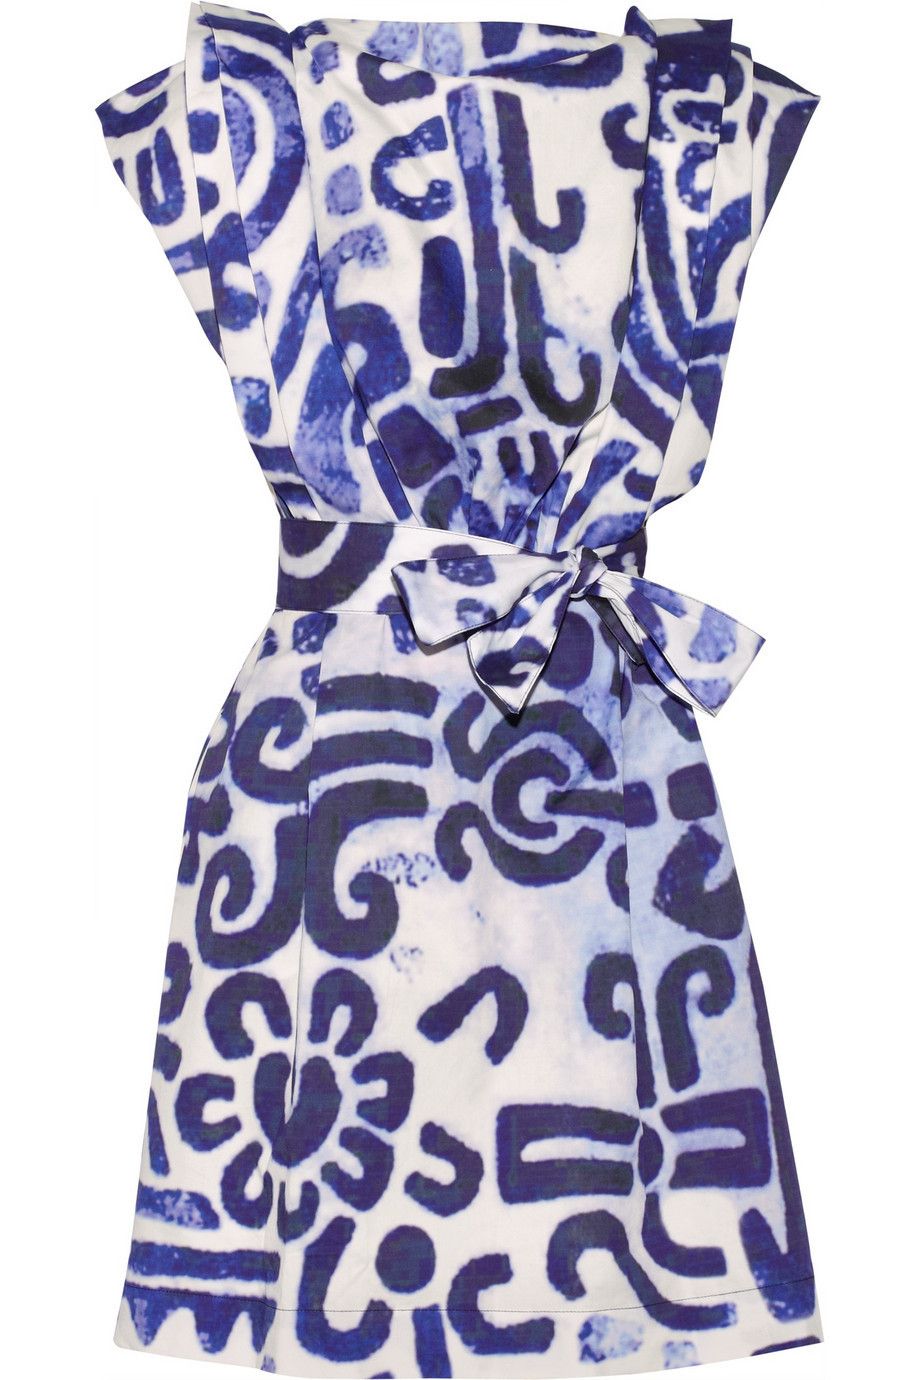 Blue, Pattern, Dress, One-piece garment, Electric blue, Art, Cobalt blue, Aqua, Day dress, Creative arts, 